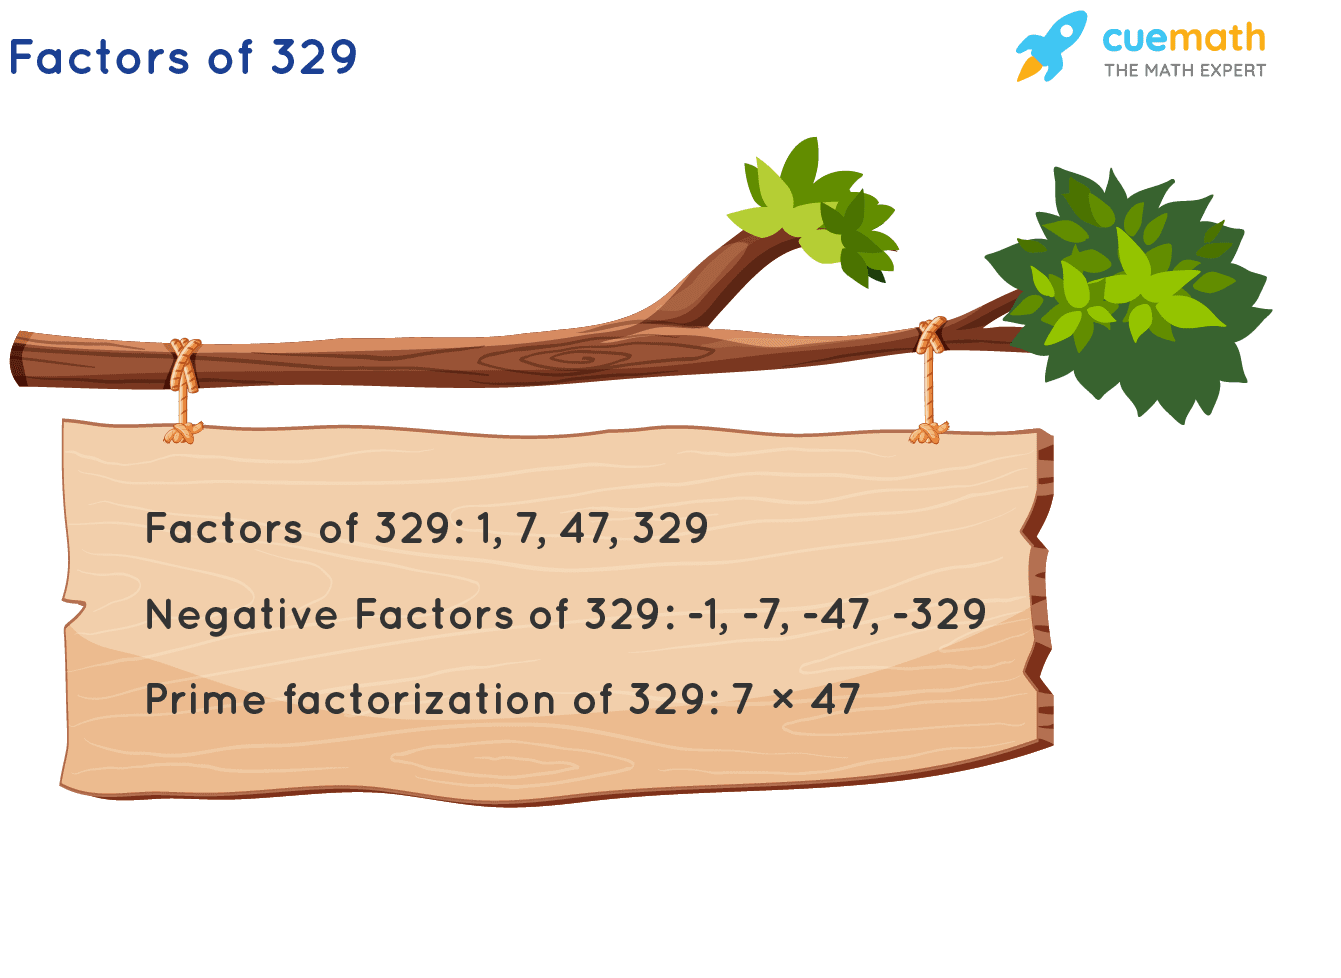 Factors of 329